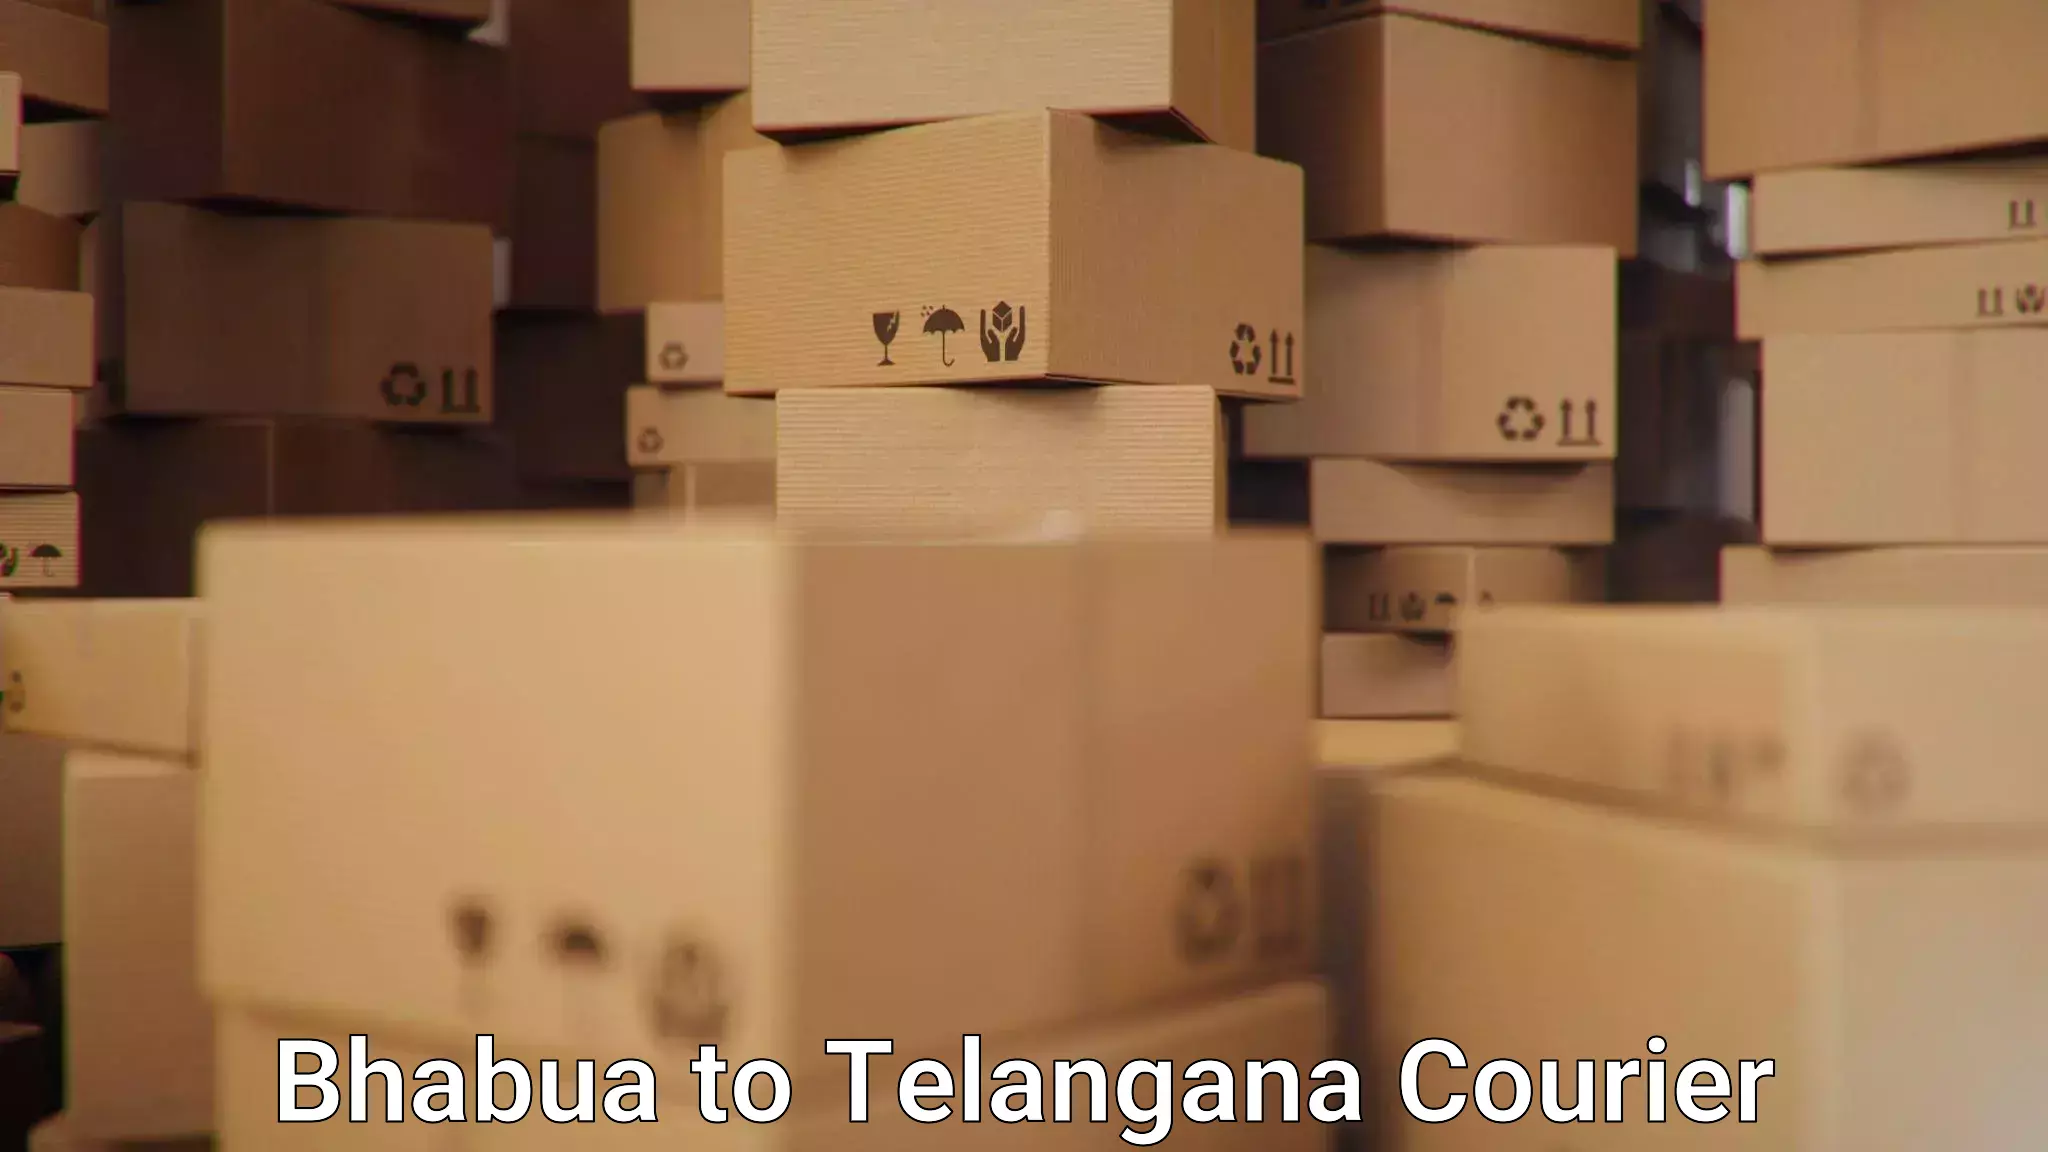 Courier service innovation Bhabua to Mudigonda